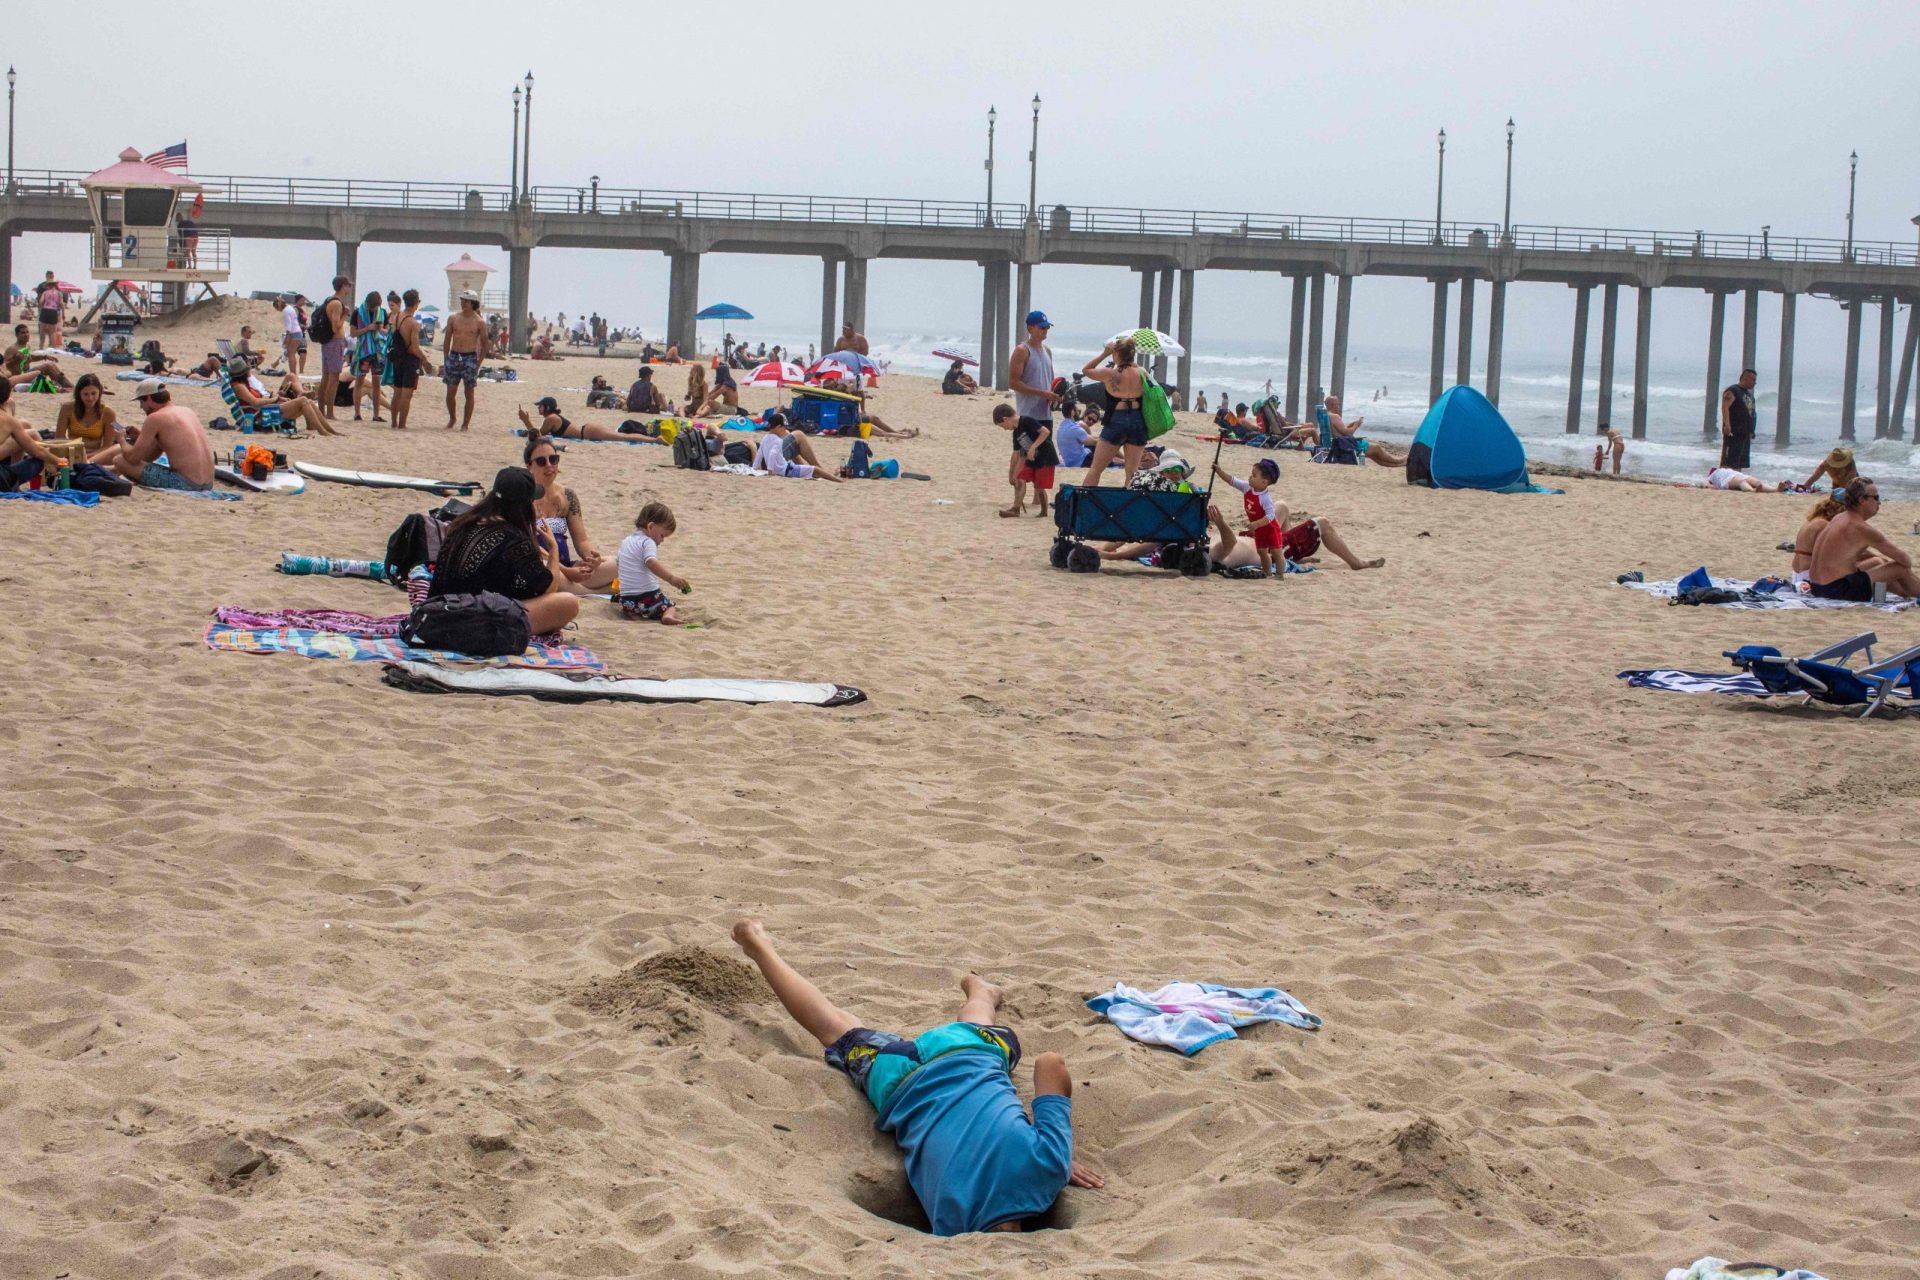 Milhares de pessoas juntam-se na praia no país mais afetado pelo novo coronavírus